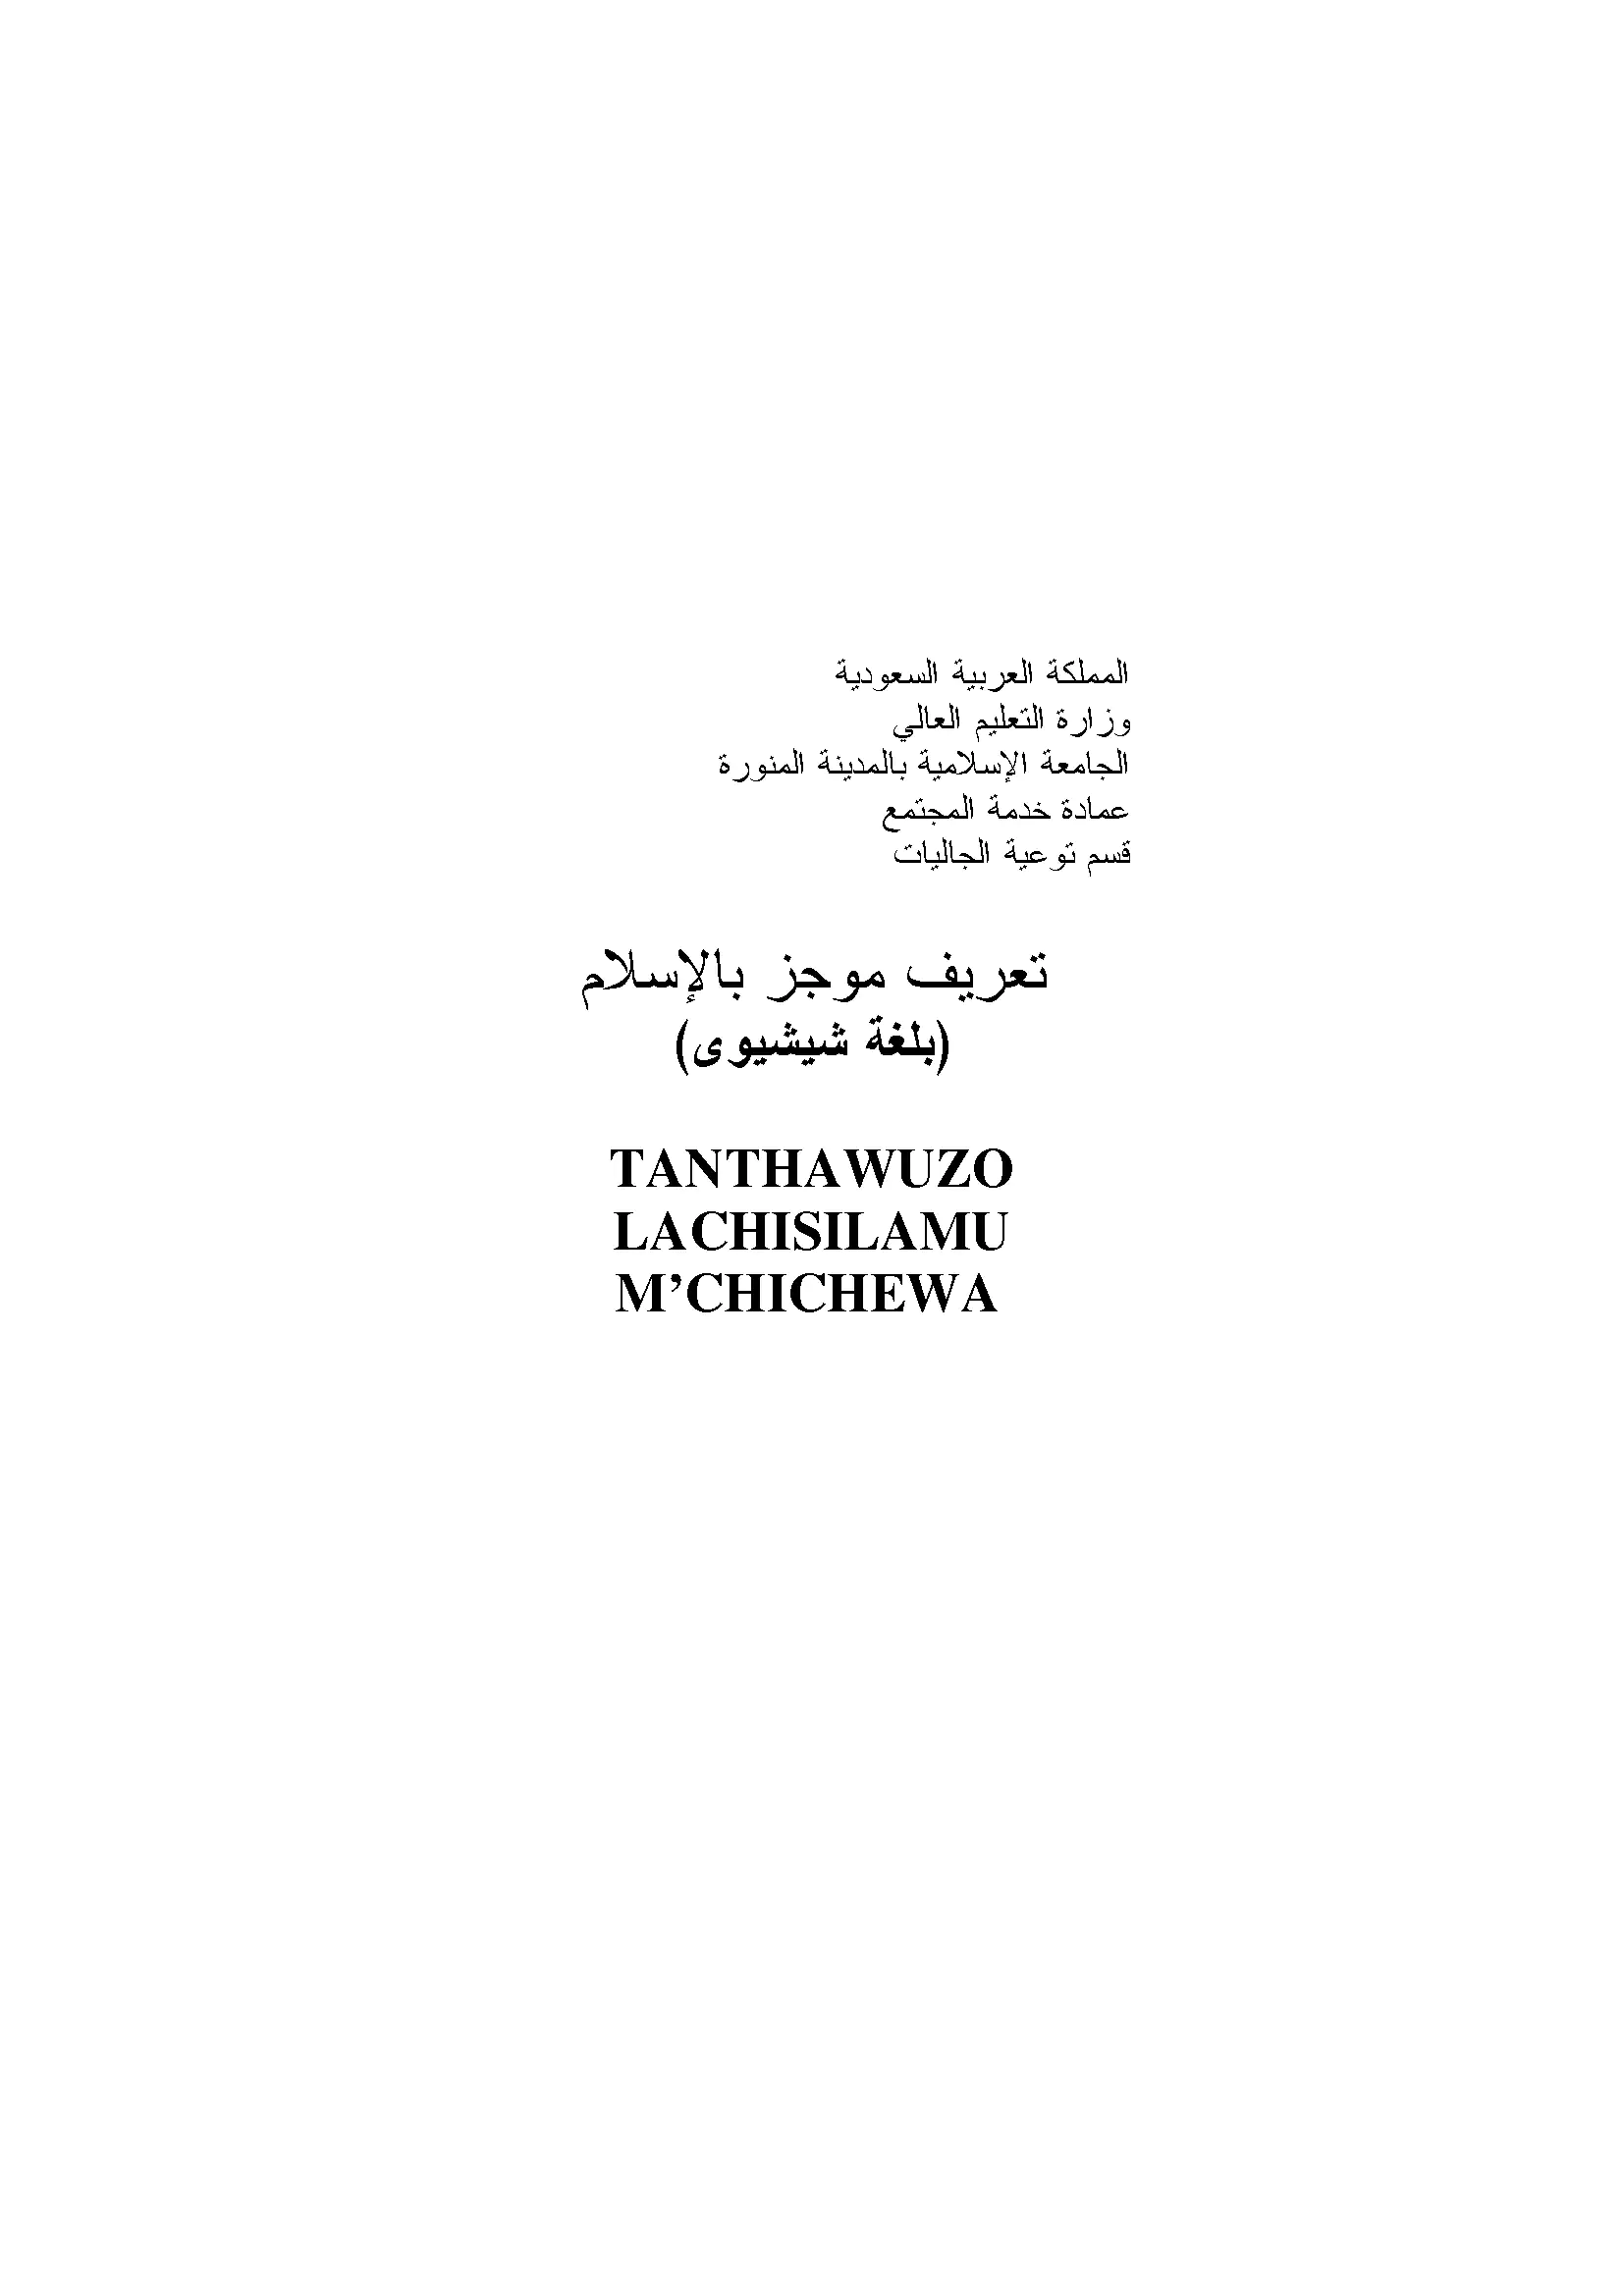 TANTHAWUZO LACHISILAMU M’CHICHEWA